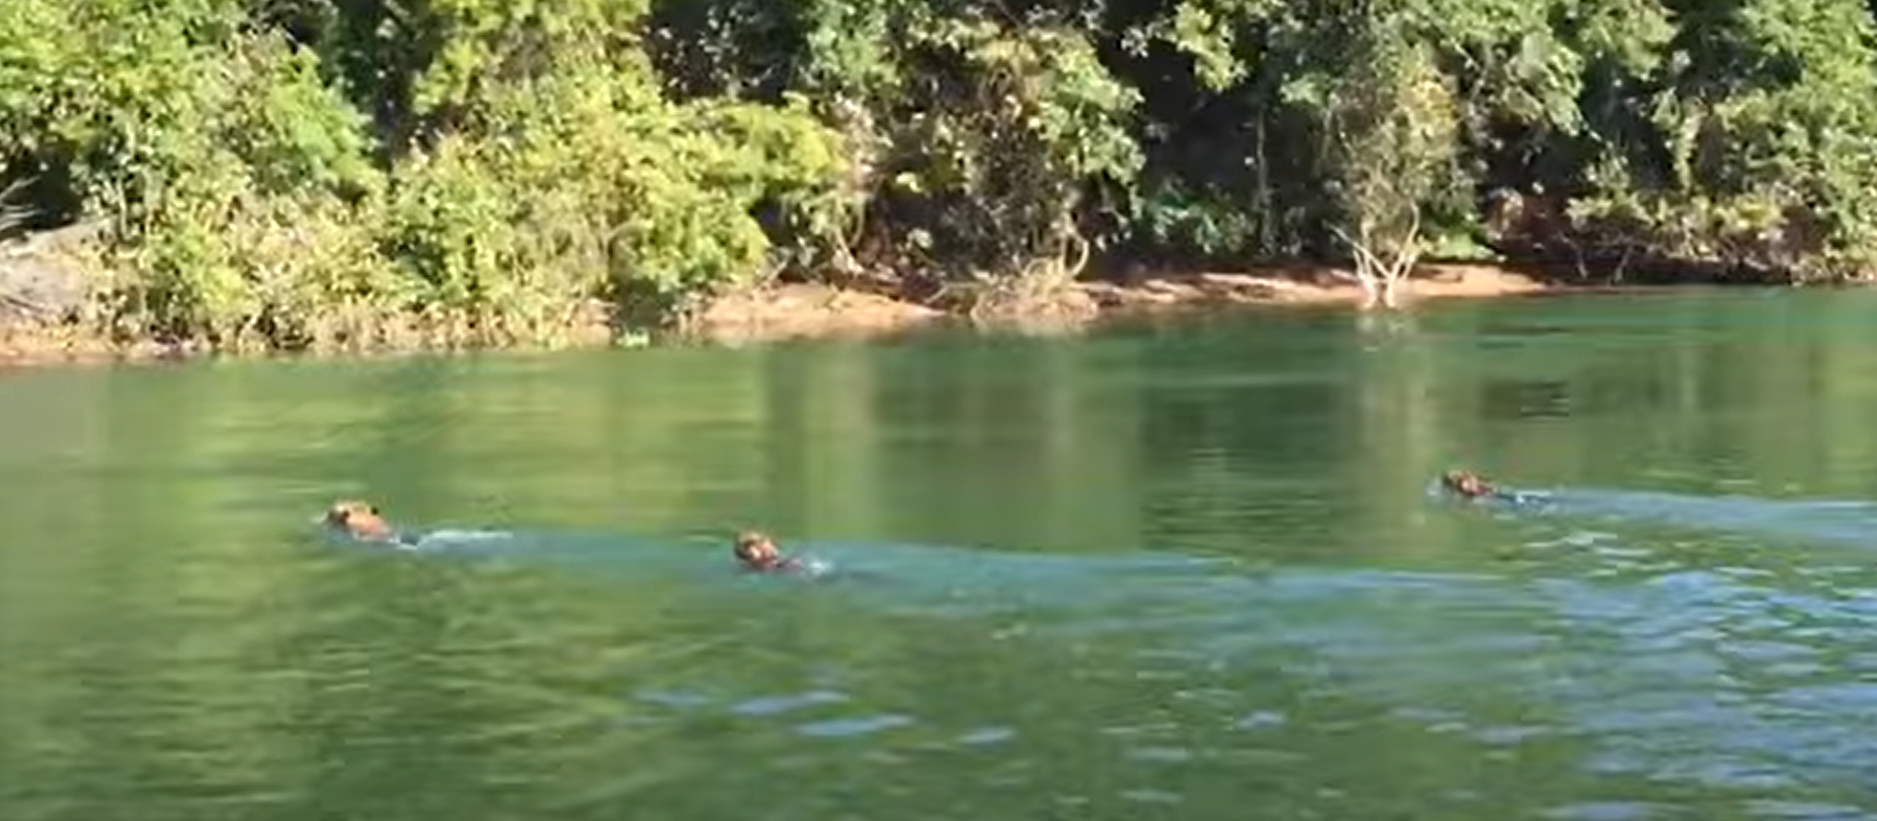 Pescadores flagram três onças-pintadas nadando no Rio Paraná, em Porto Rico; vídeo 